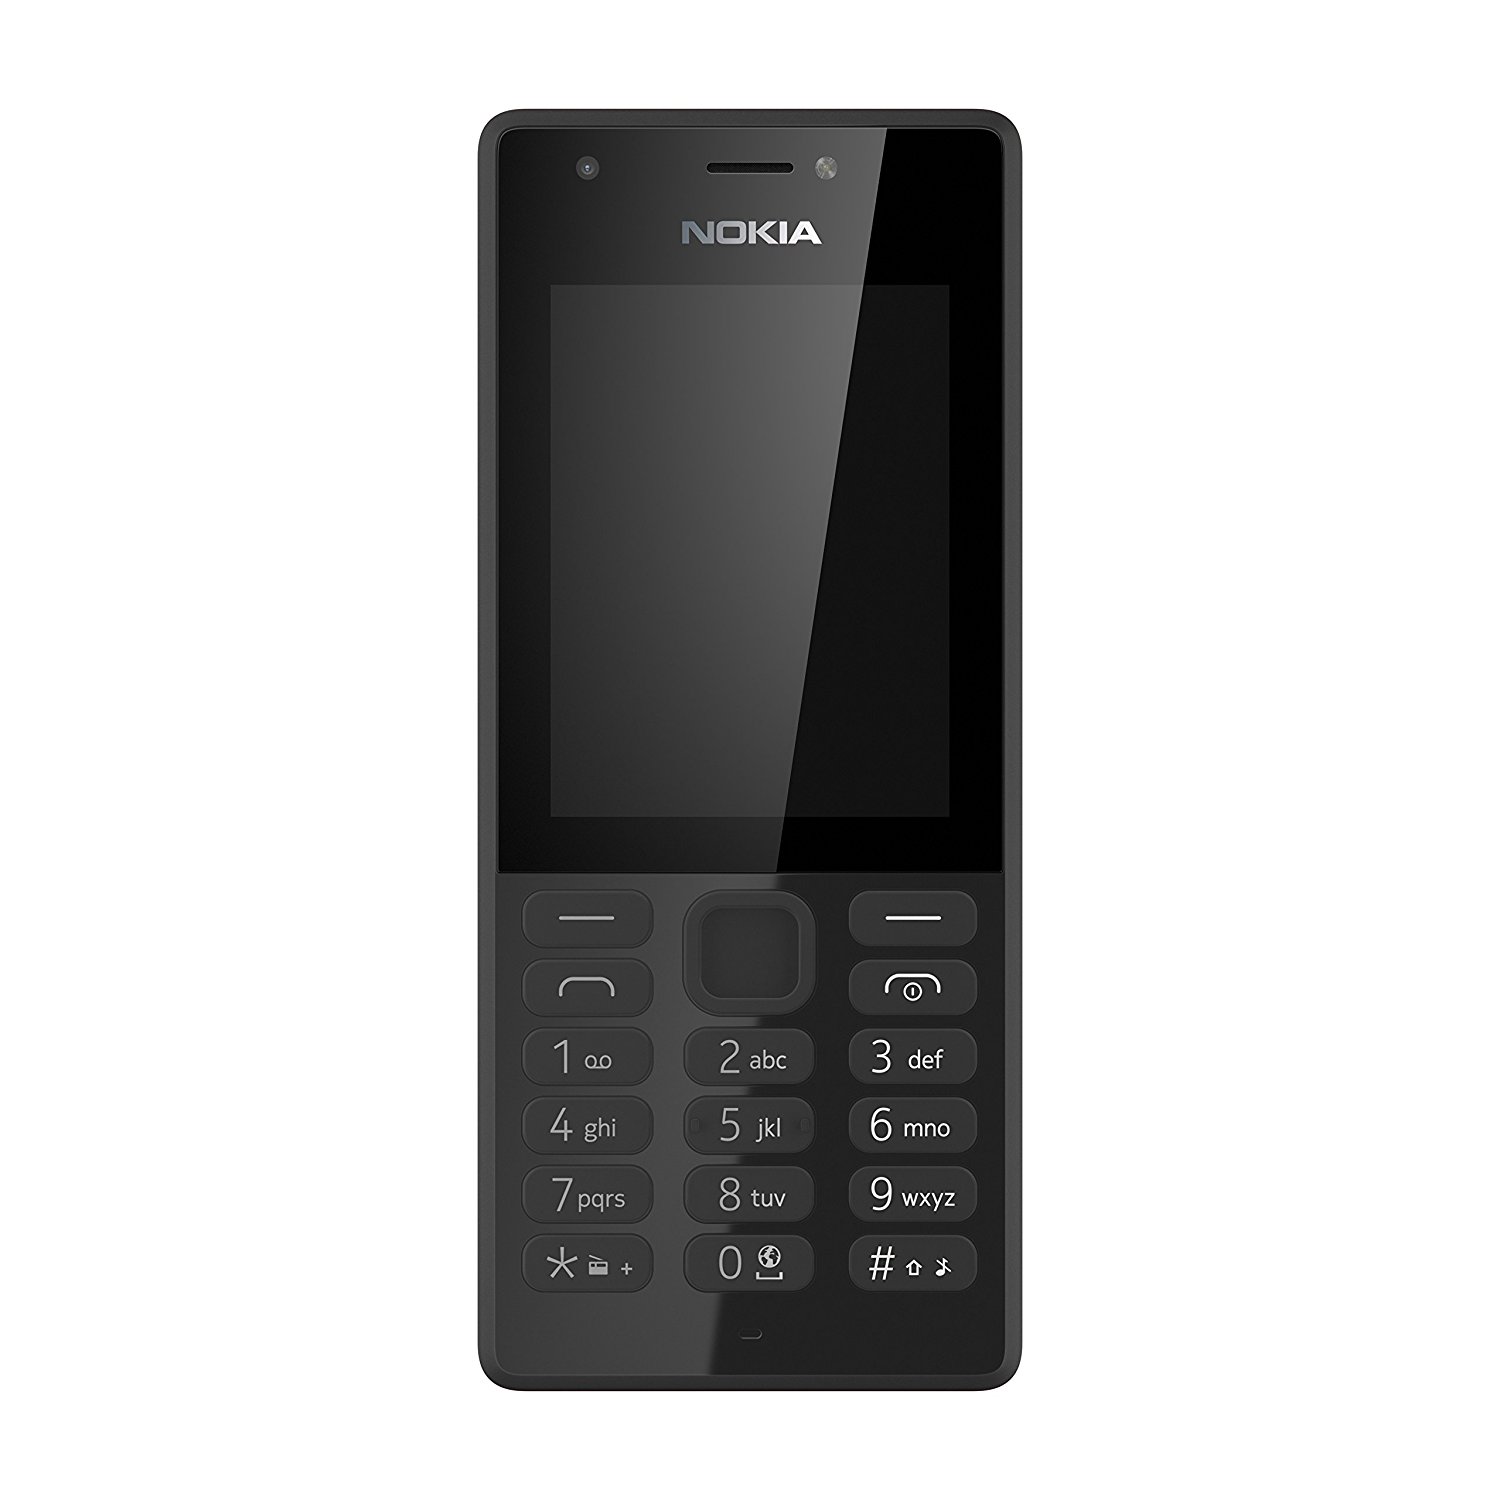 Nokia 216 SIM Free Feature Phone - Black: Amazon.co.uk: Electronics